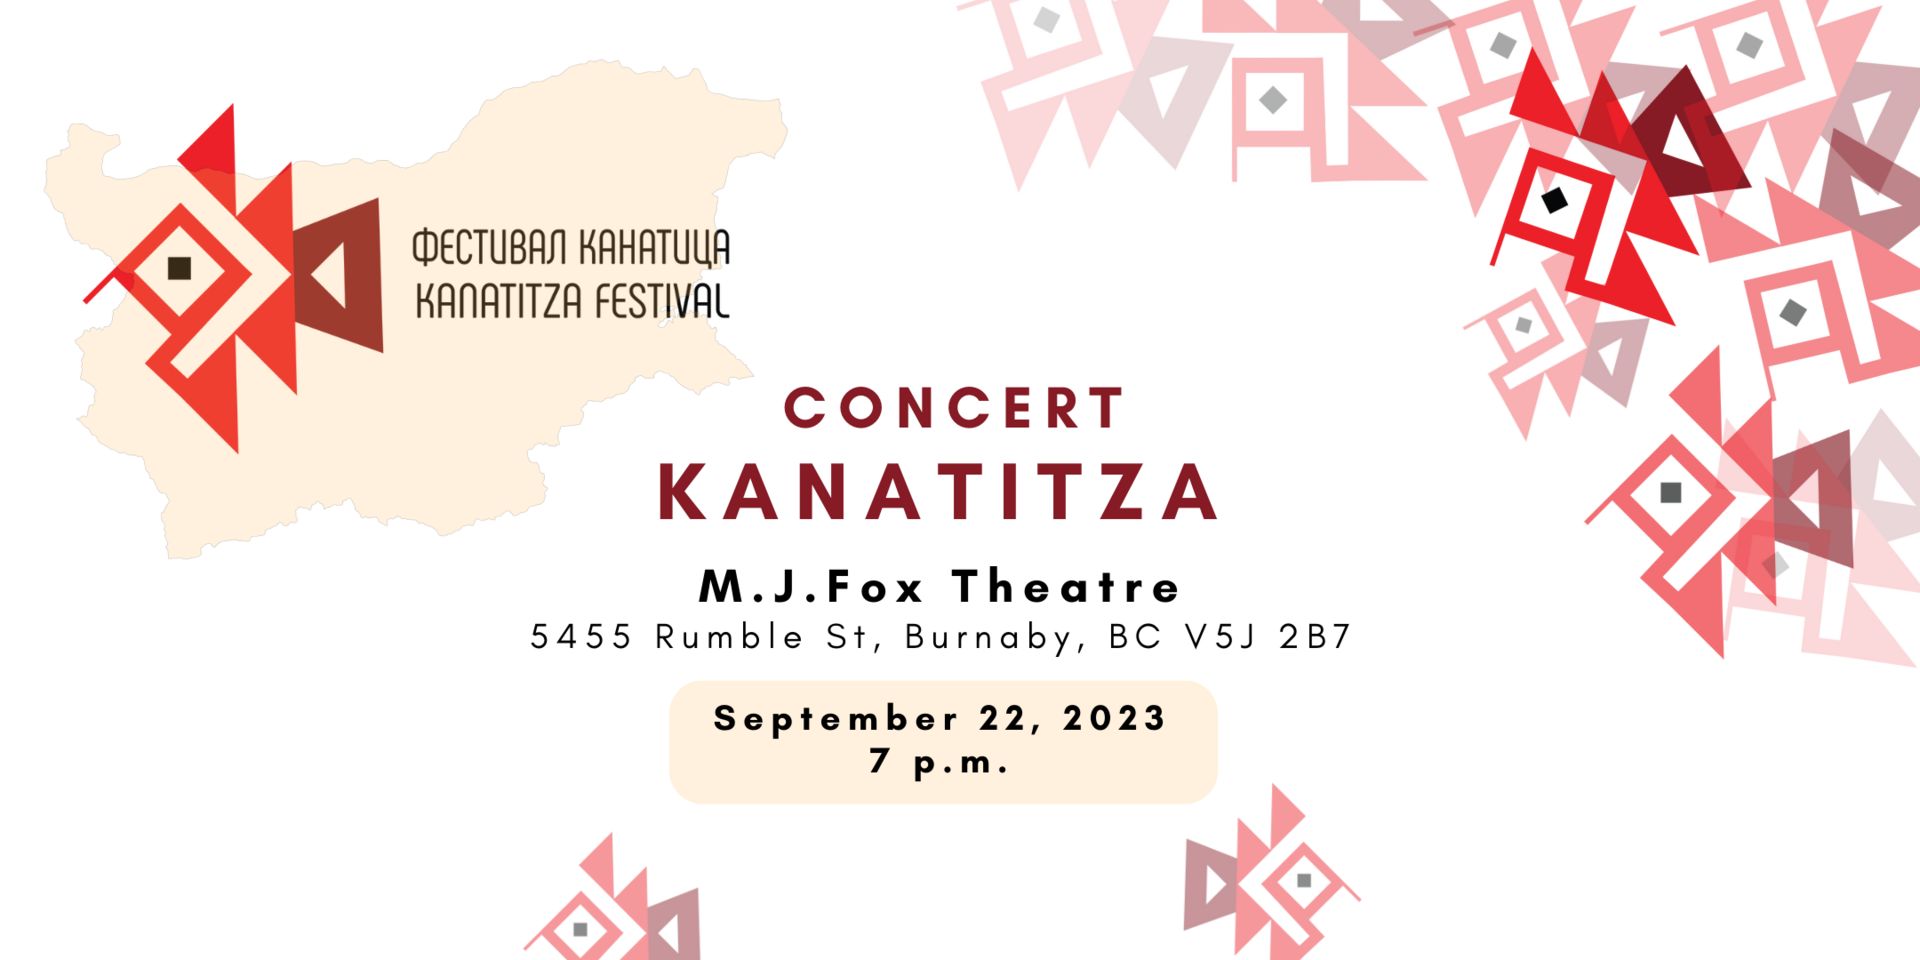 Concert Kanatitza 2023, Burnaby, British Columbia, Canada